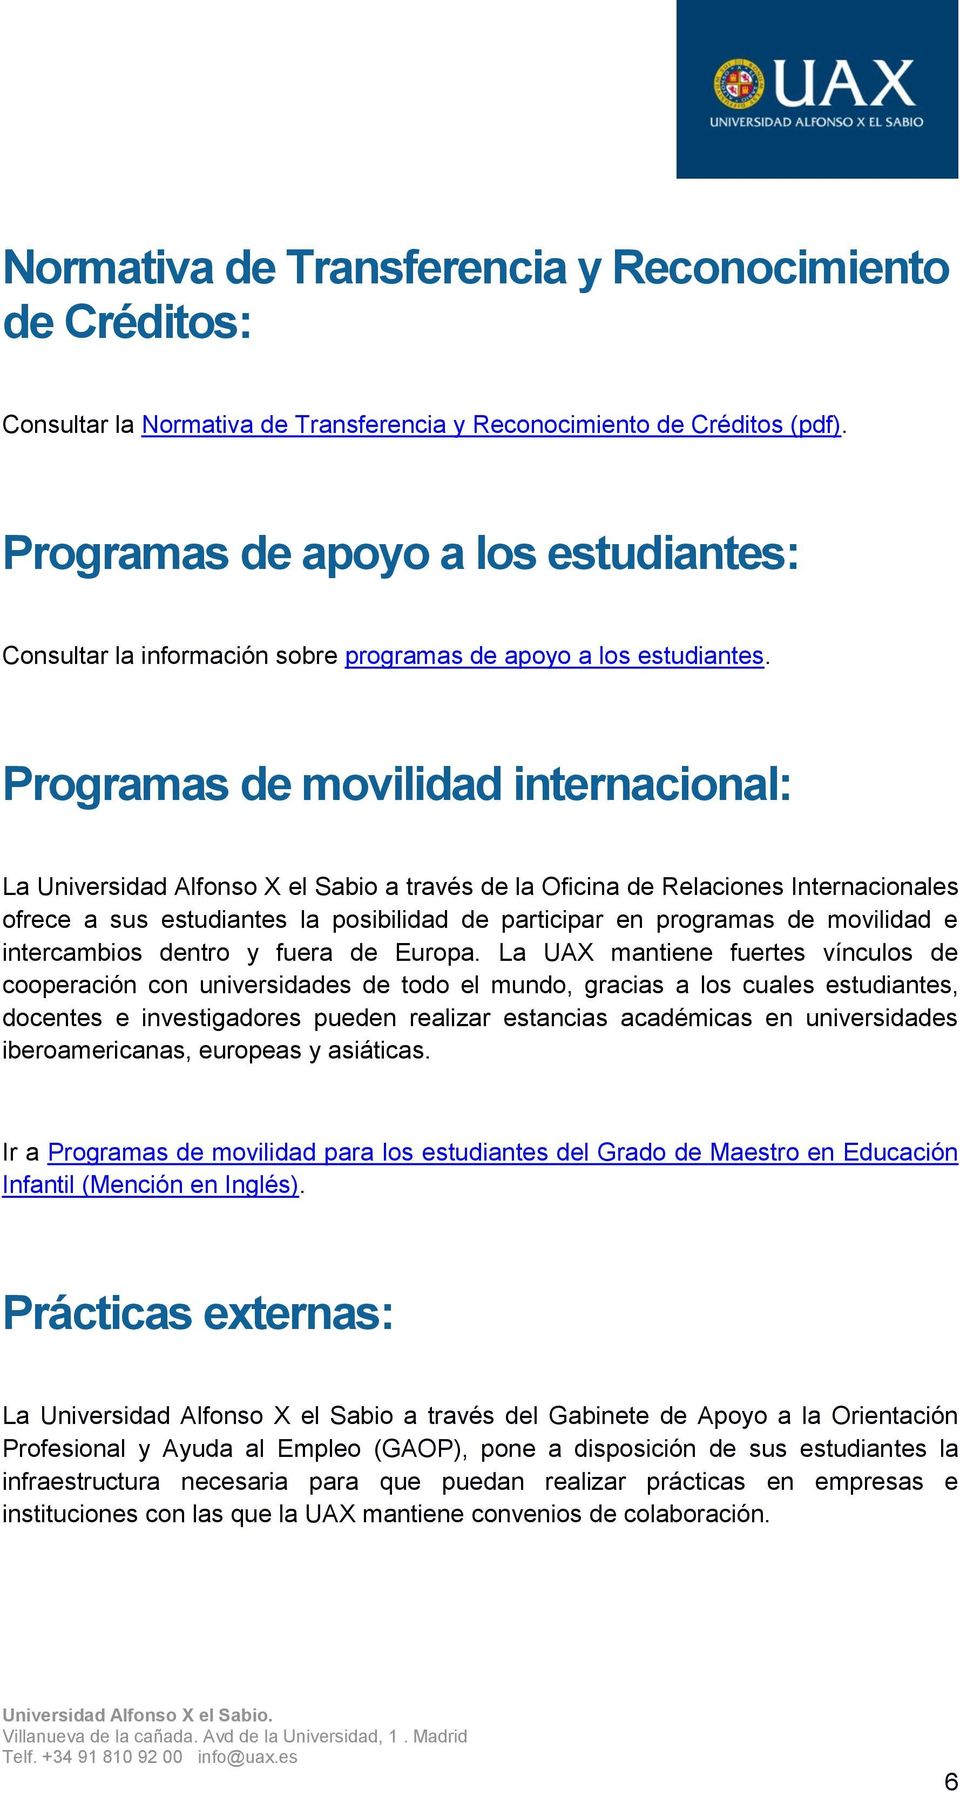 Programas de movilidad internacional: La Universidad Alfonso X el Sabio a través de la Oficina de Relaciones Internacionales ofrece a sus estudiantes la posibilidad de participar en programas de